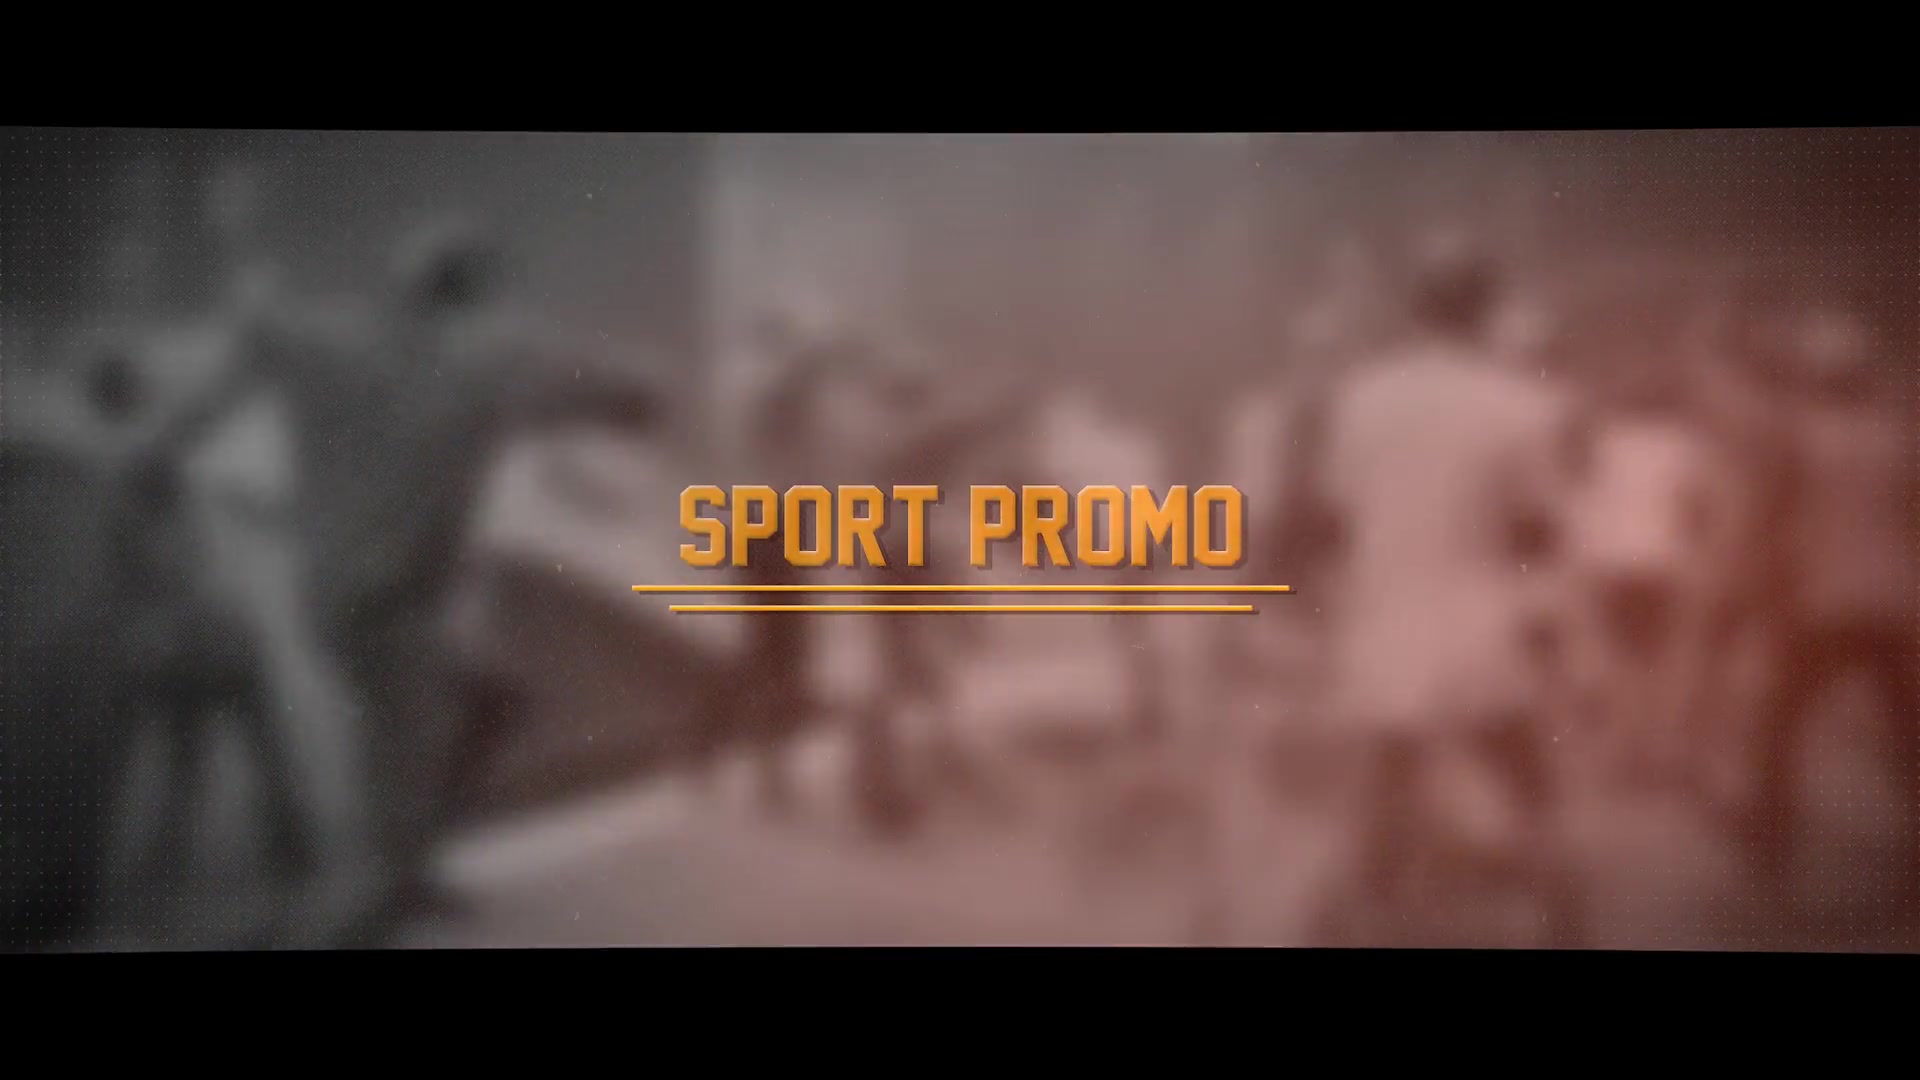 Sport Promo - Download Videohive 22632601